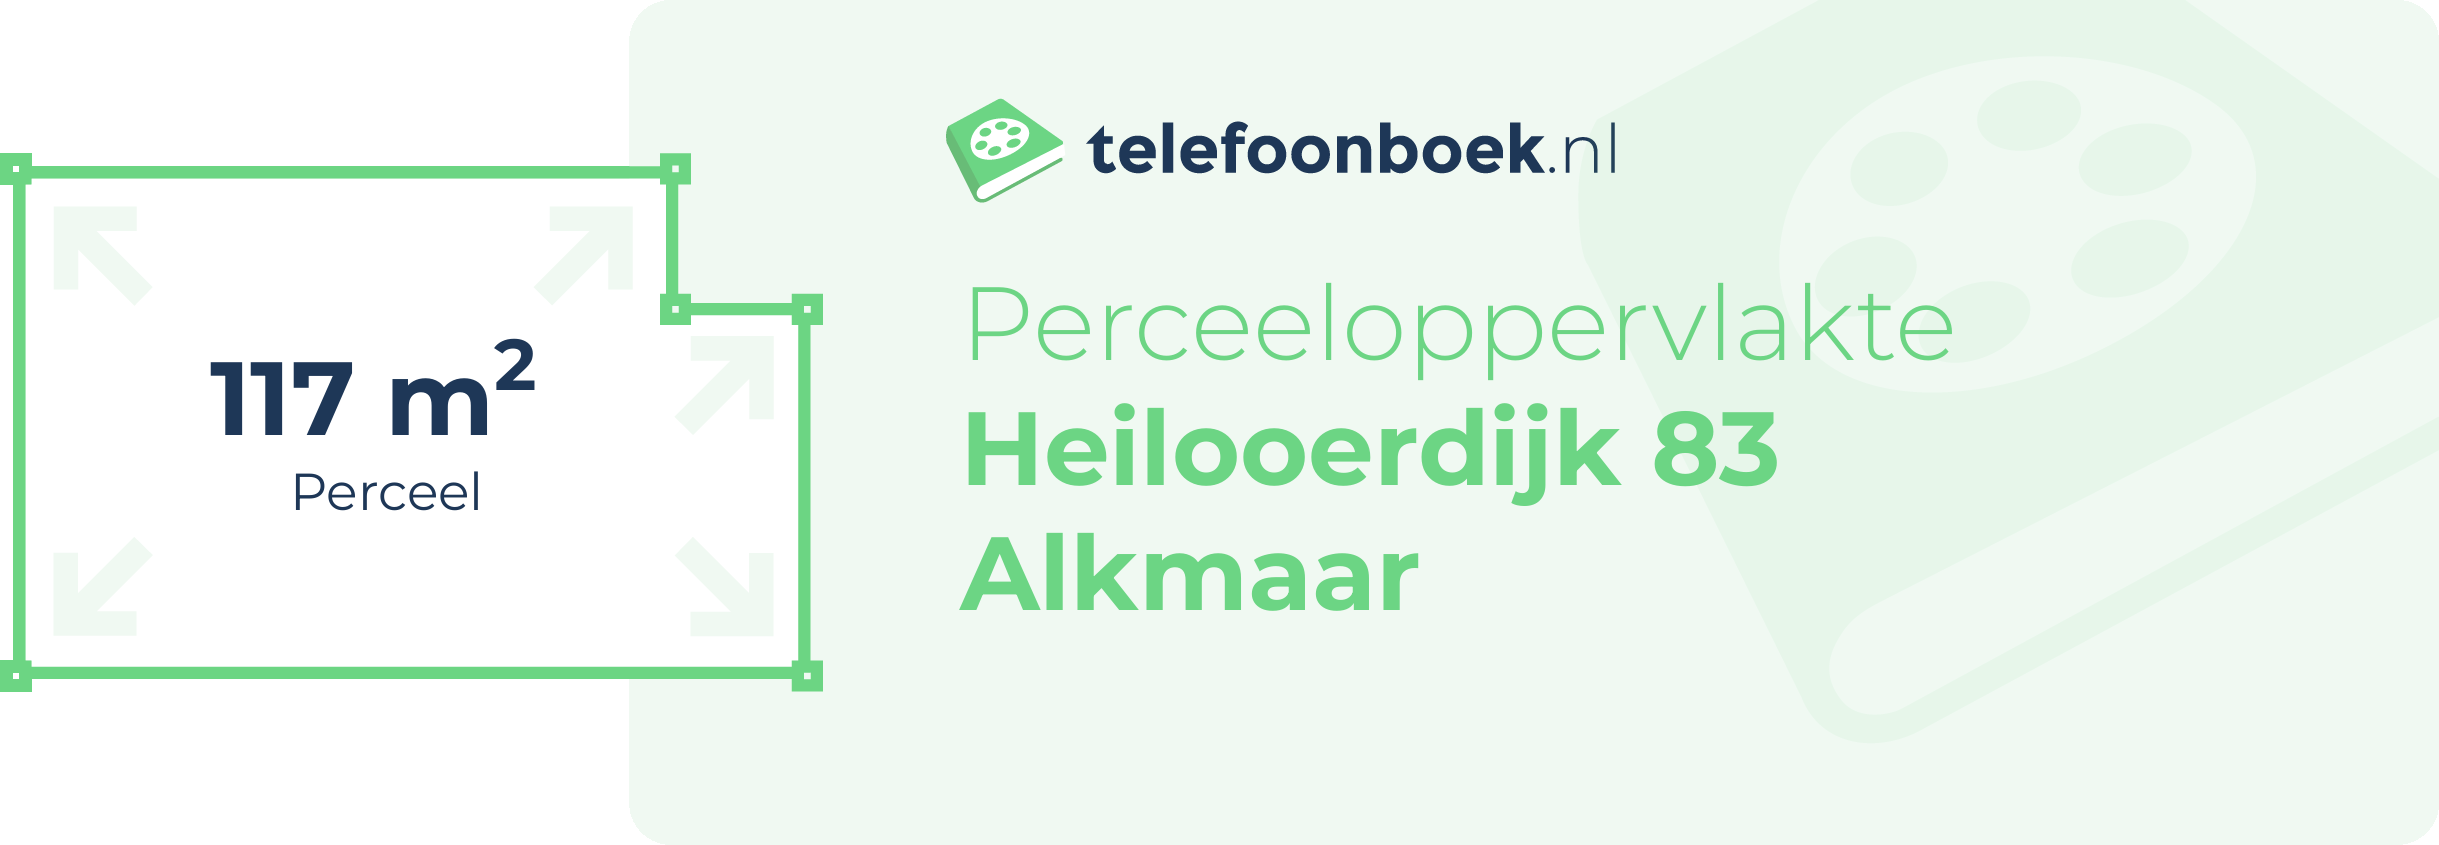 Perceeloppervlakte Heilooerdijk 83 Alkmaar